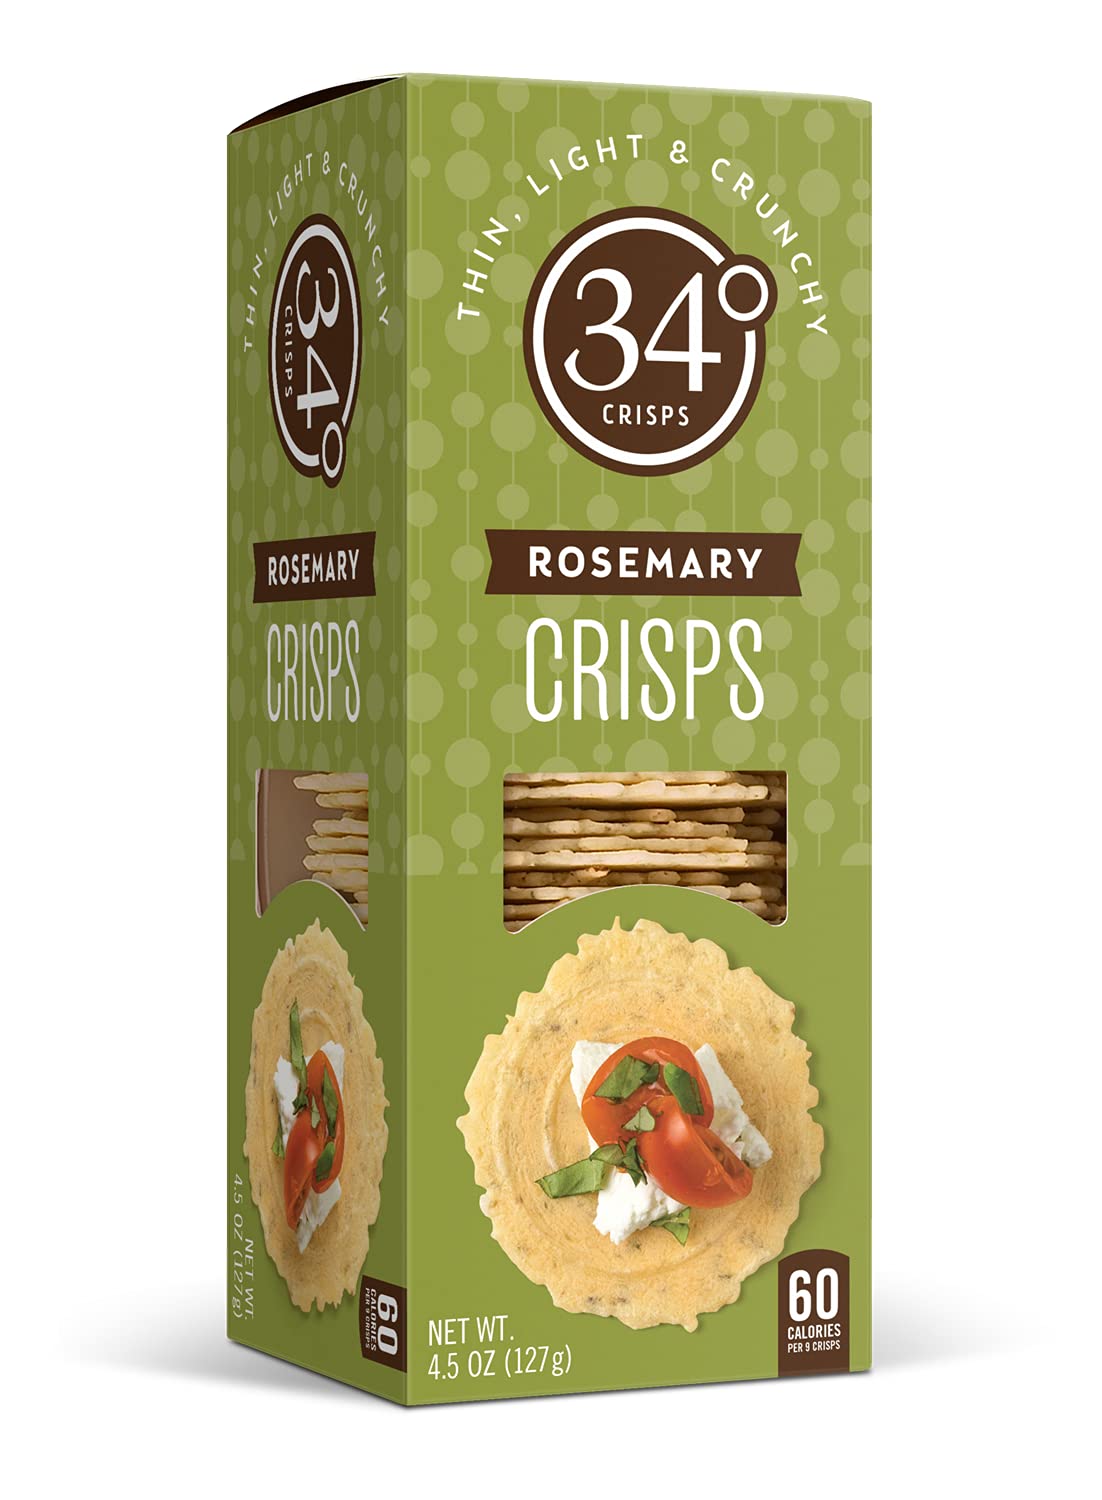 34 Degrees Crisps | Rosemary Crisps | Thin, Light & Crunchy Original Crisps, 6 Pack (4.5oz each)